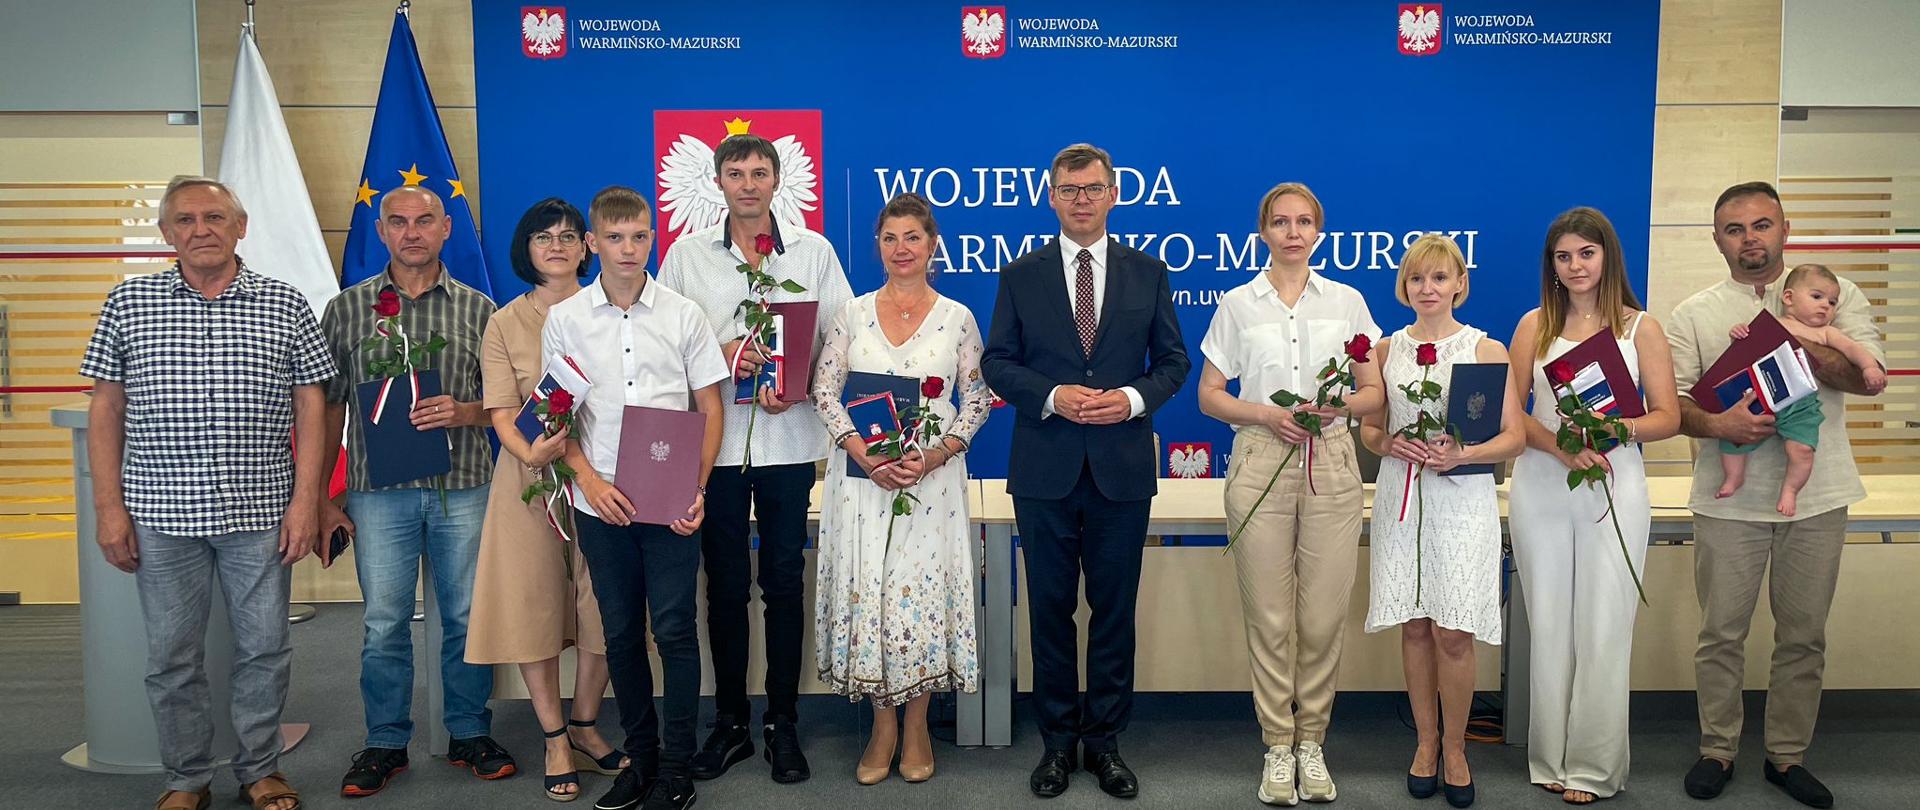 Pokochali Polskę i tu chcą budować swoją przyszłość - Wojewoda wręczył obywatelstwa